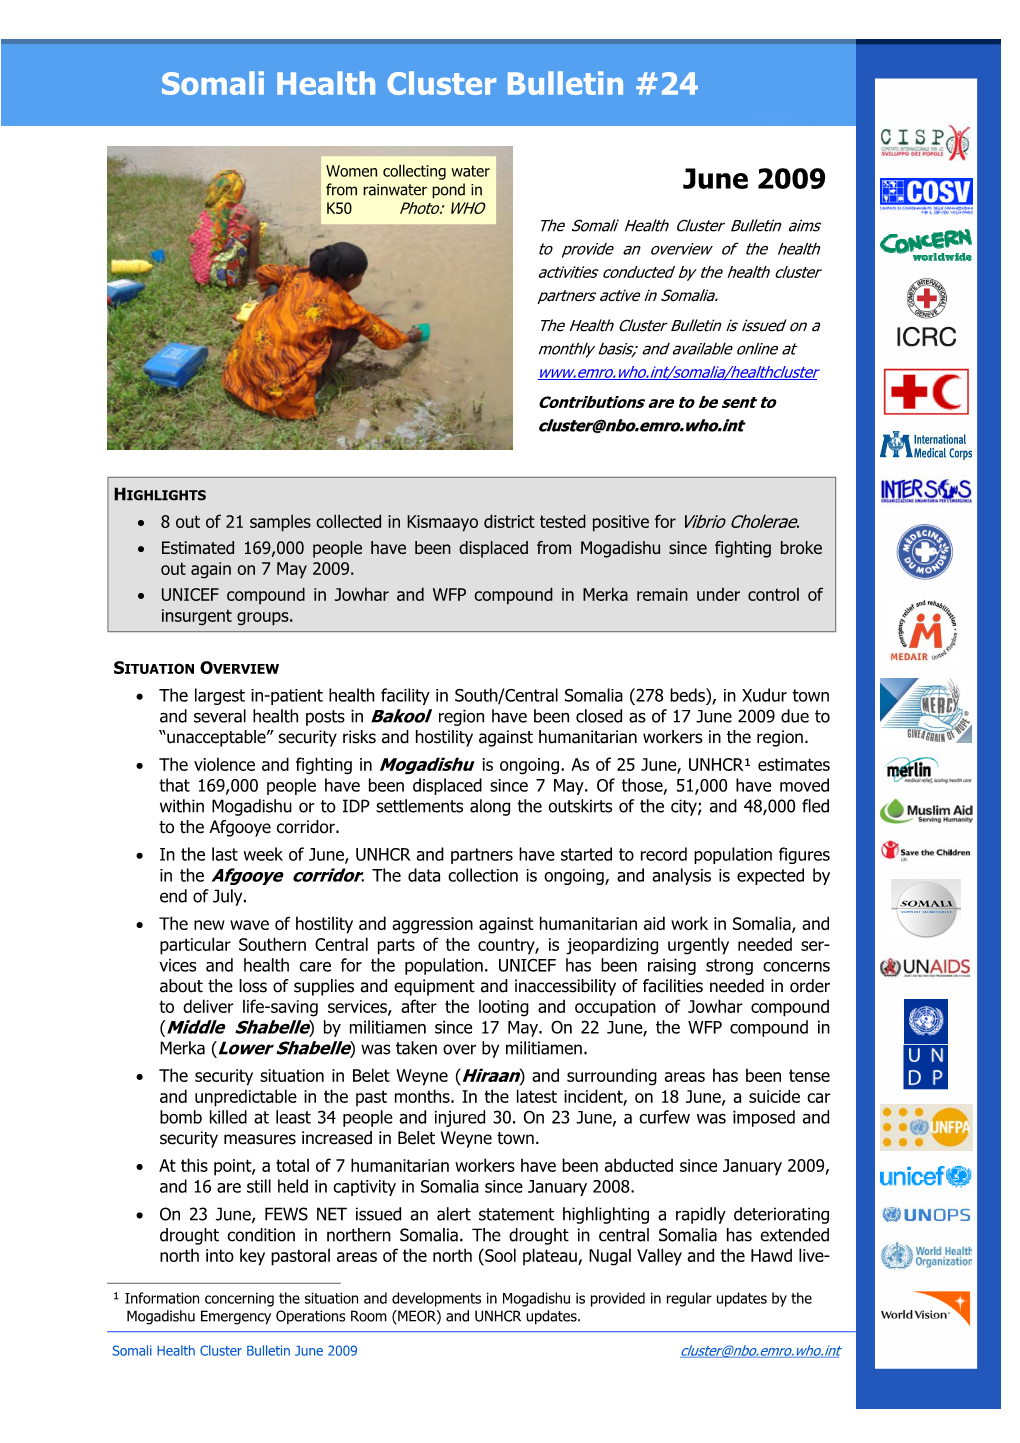 Somali Health Cluster Bulletin June 09